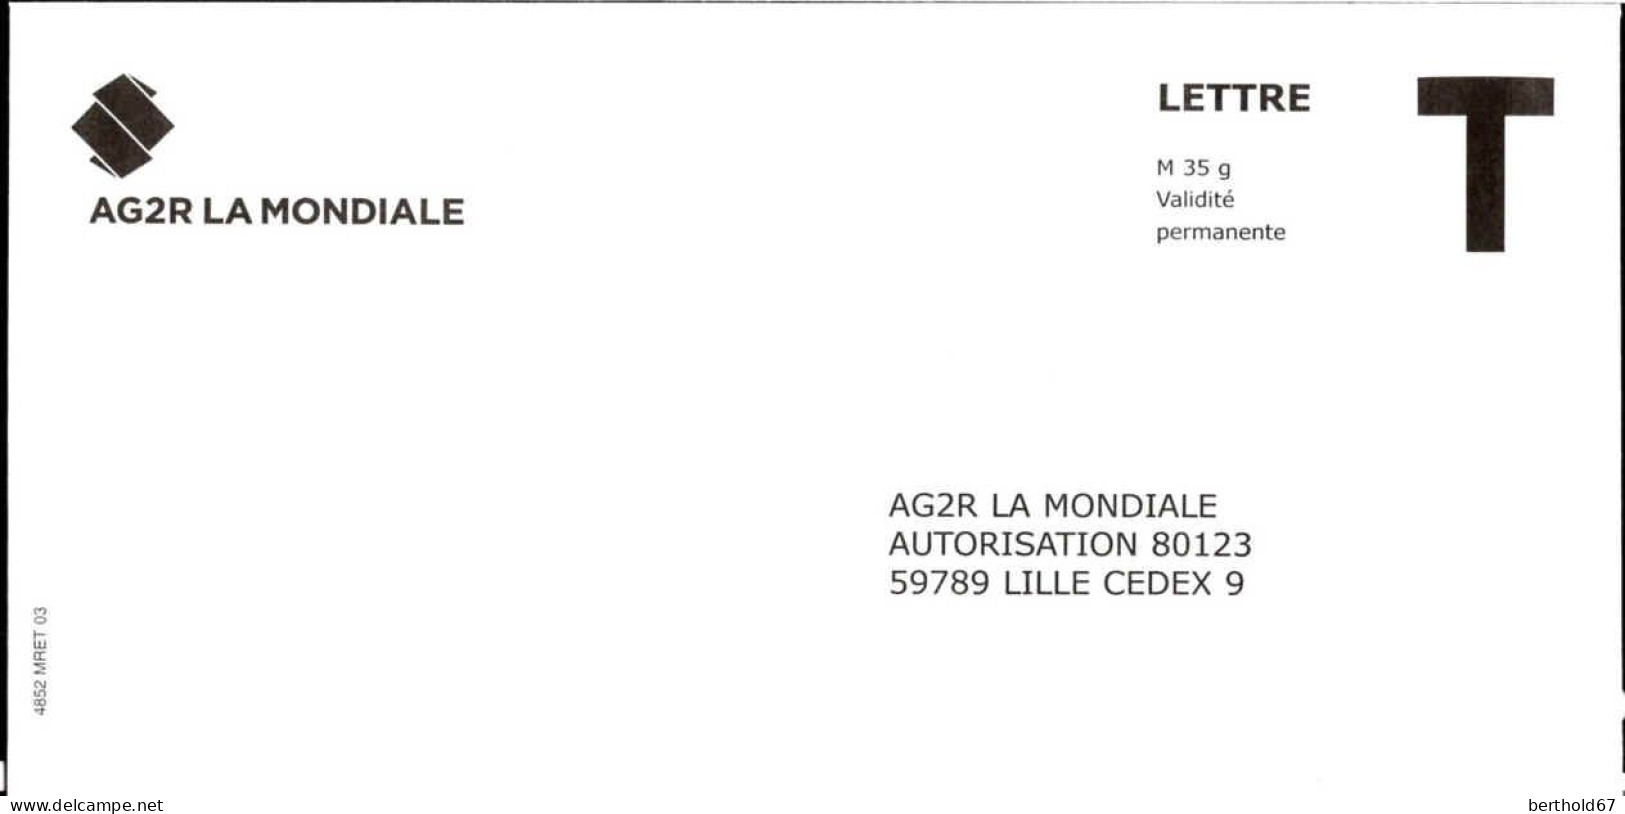 France Entier-P N** (7014) AG2R La Mondiale Autorisation 80123 Lettre M35g V.permanente - Cartes/Enveloppes Réponse T